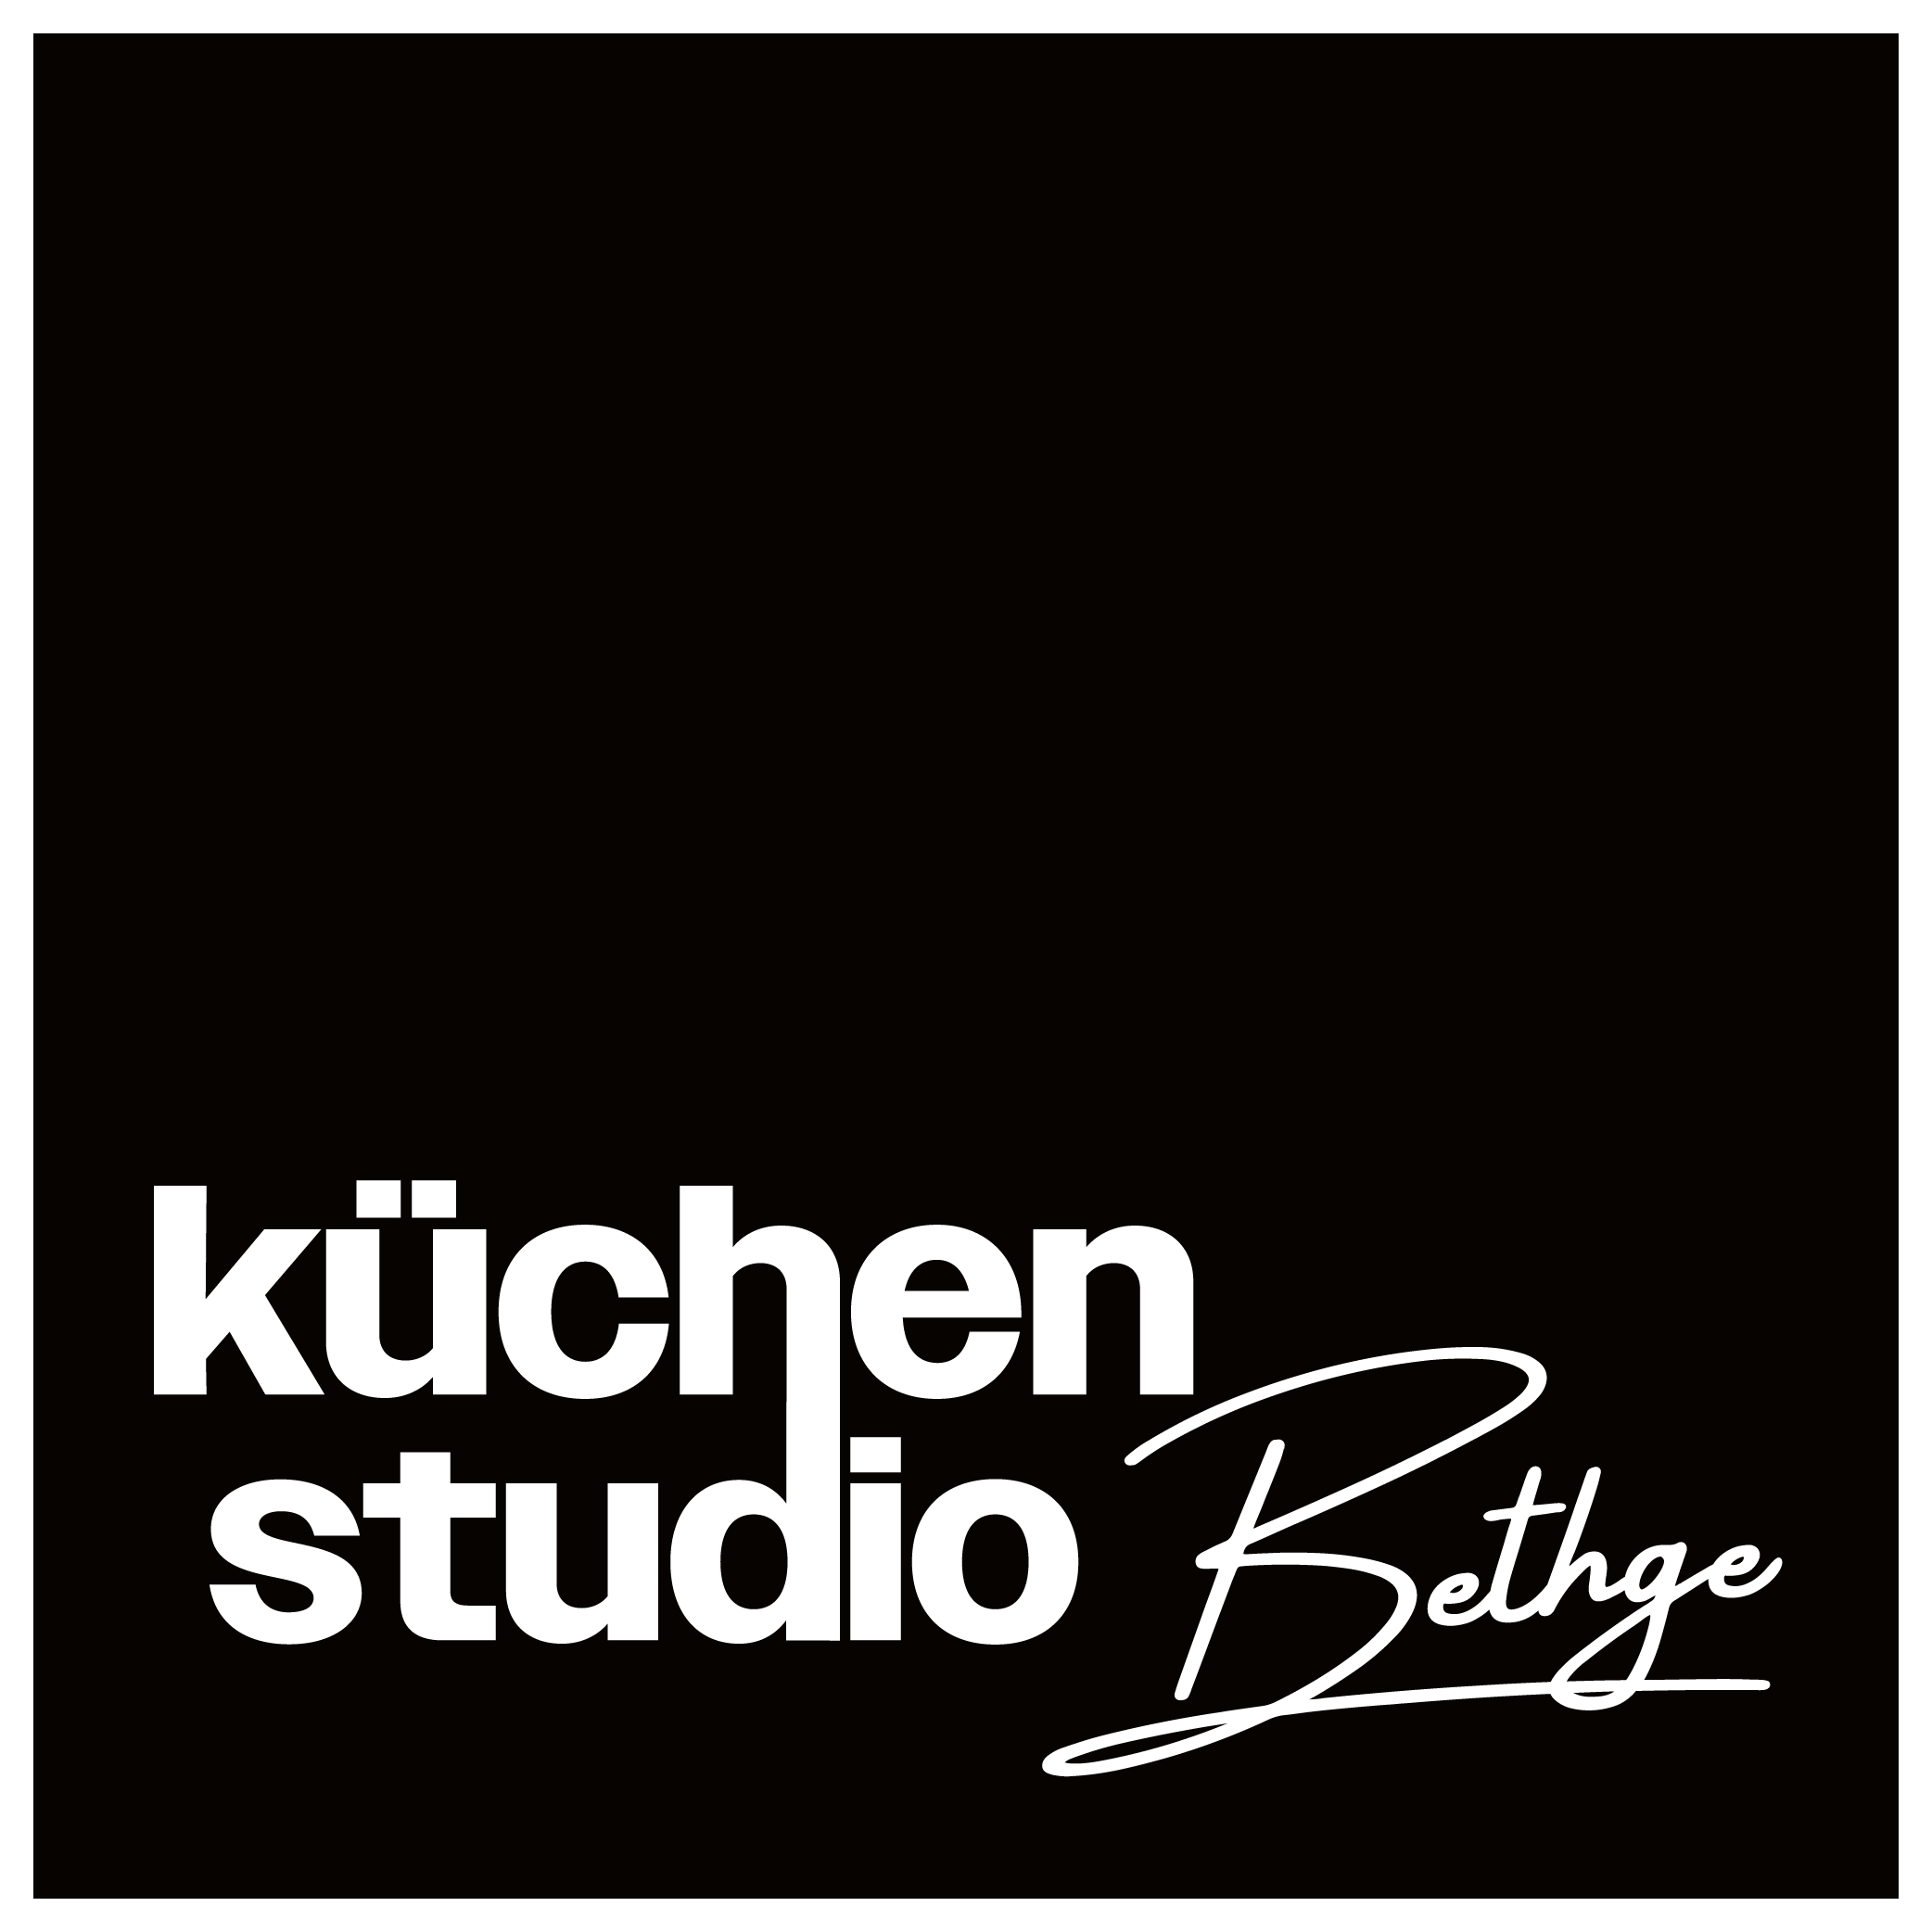 Küchenstudio Bethge in Bremen